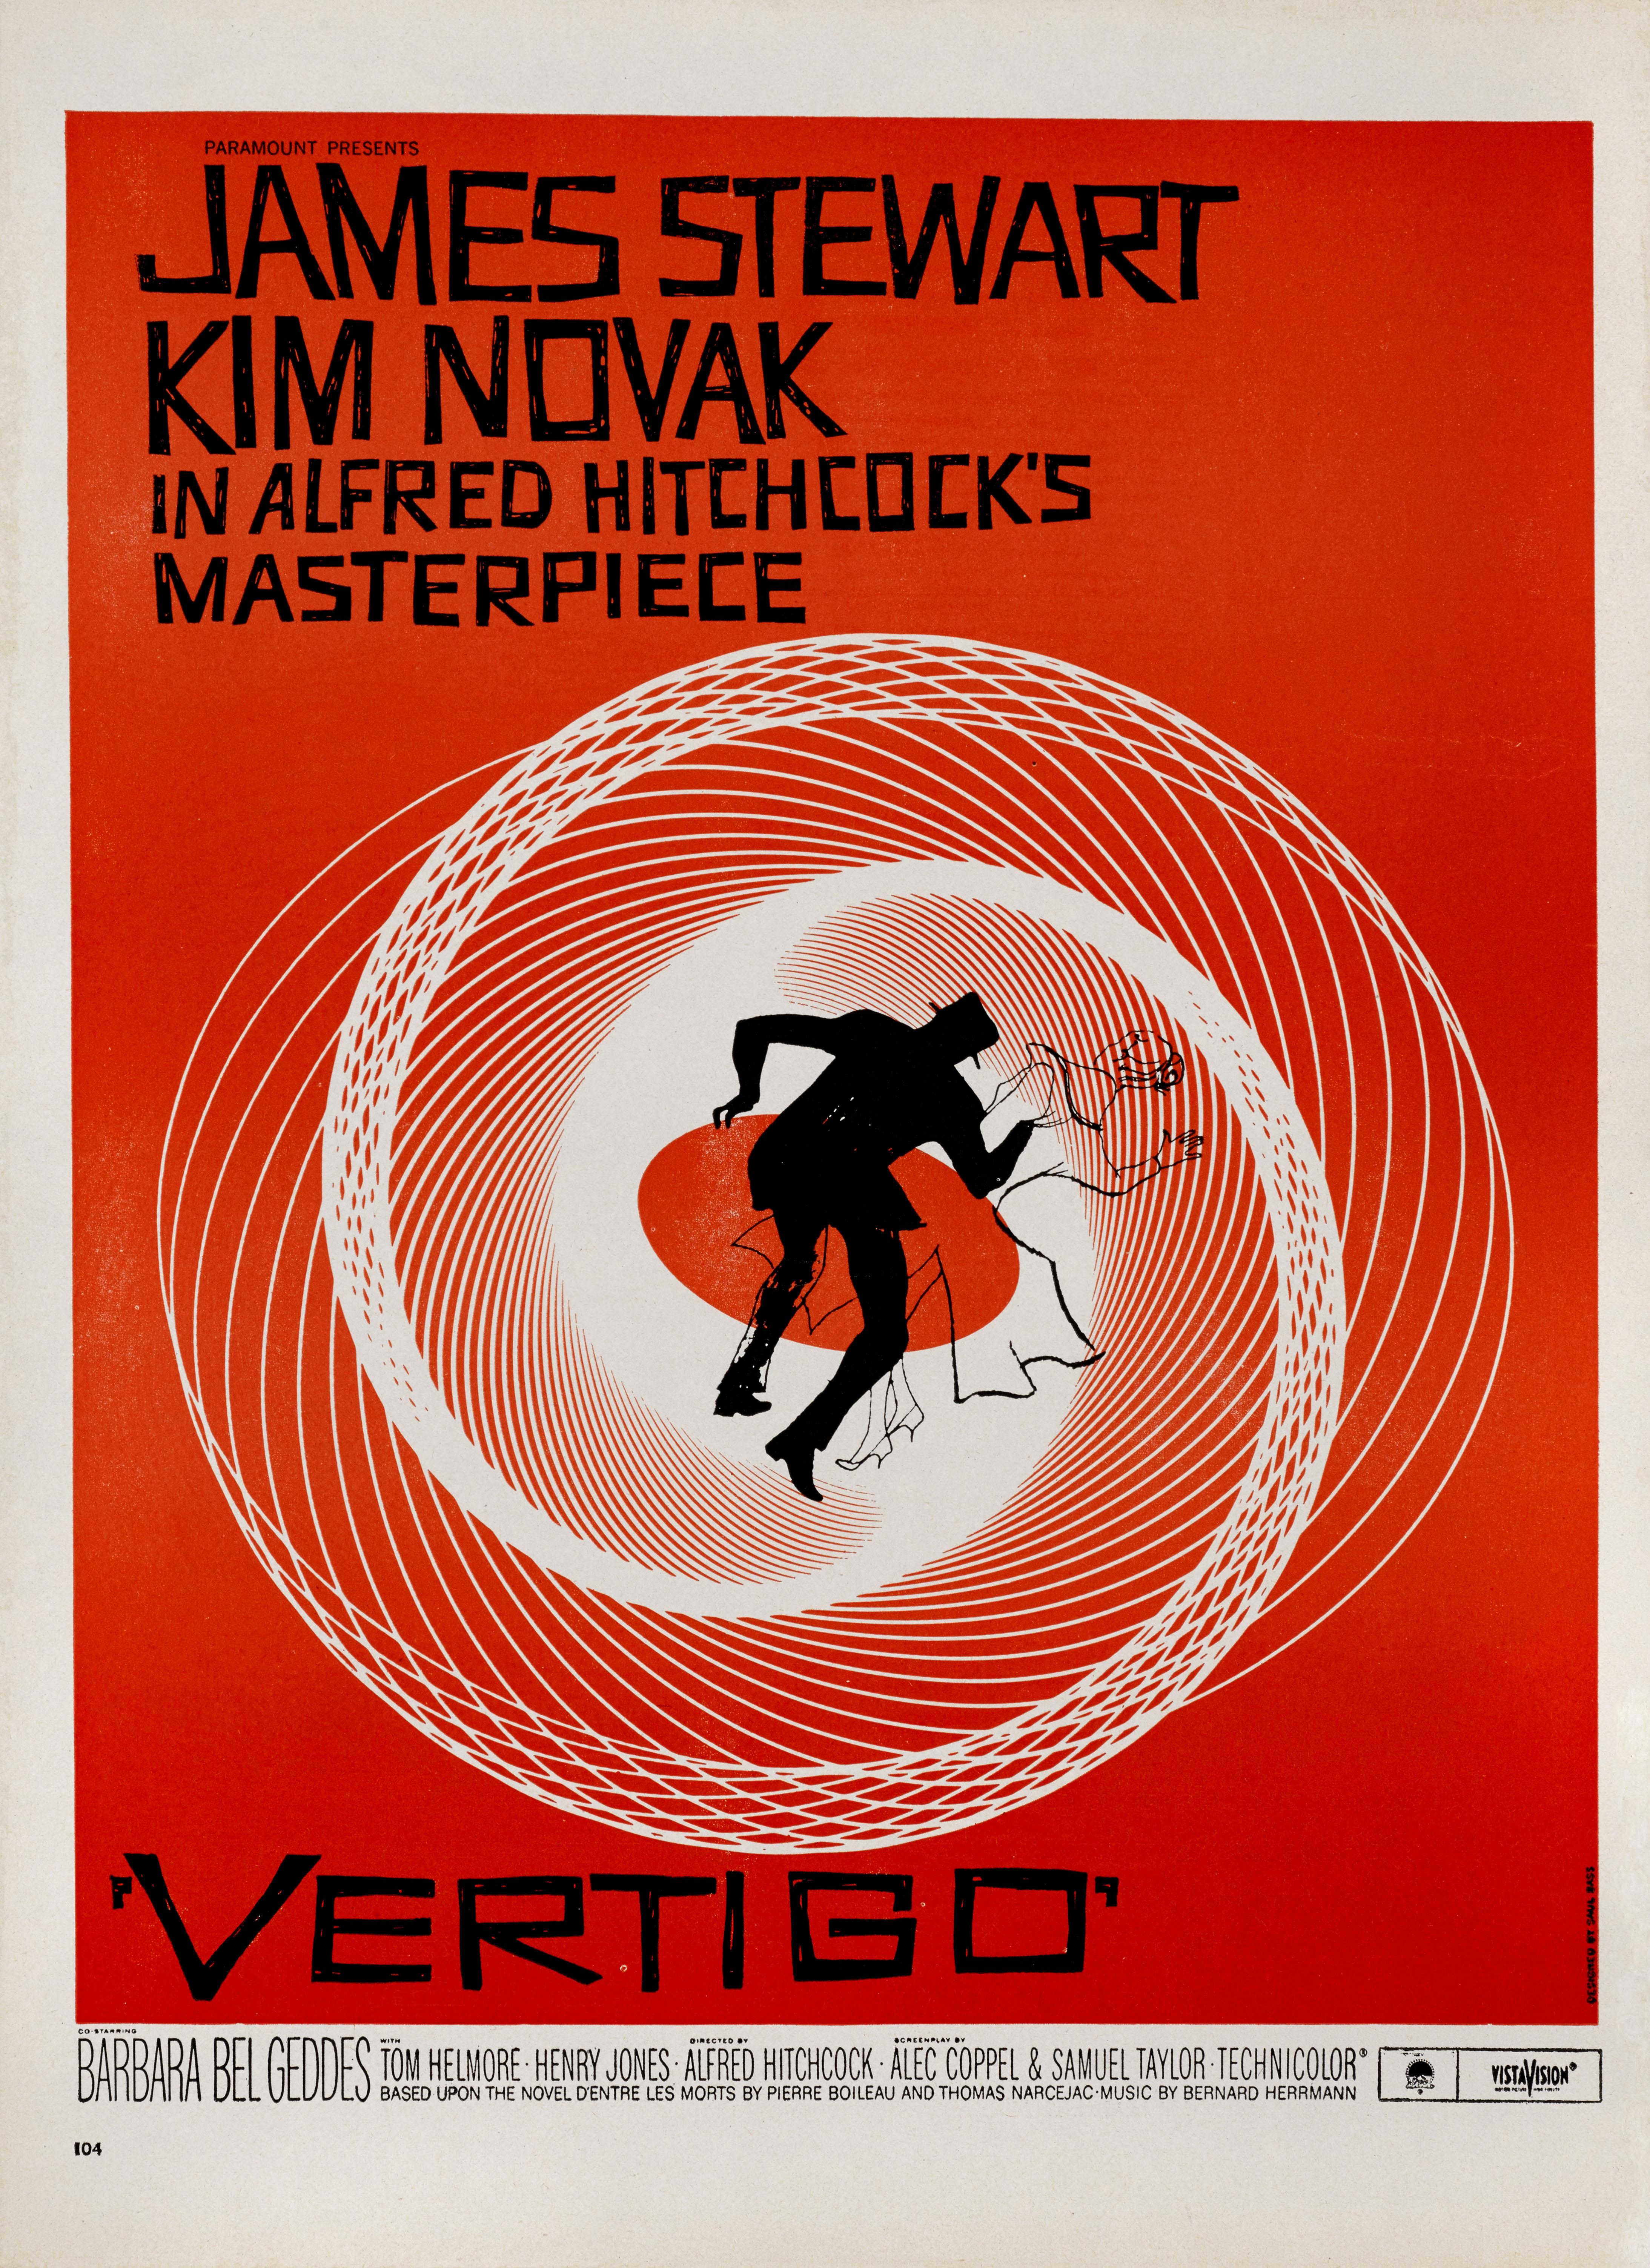 Publicité commerciale américaine originale pour le thriller classique d'Alfred Hitchcock de 1958 avec James Stewart et Kim Novak. L'œuvre d'art est due au célèbre graphiste Saul Bass (1920-1996). 
C'est la quatrième et dernière fois que James